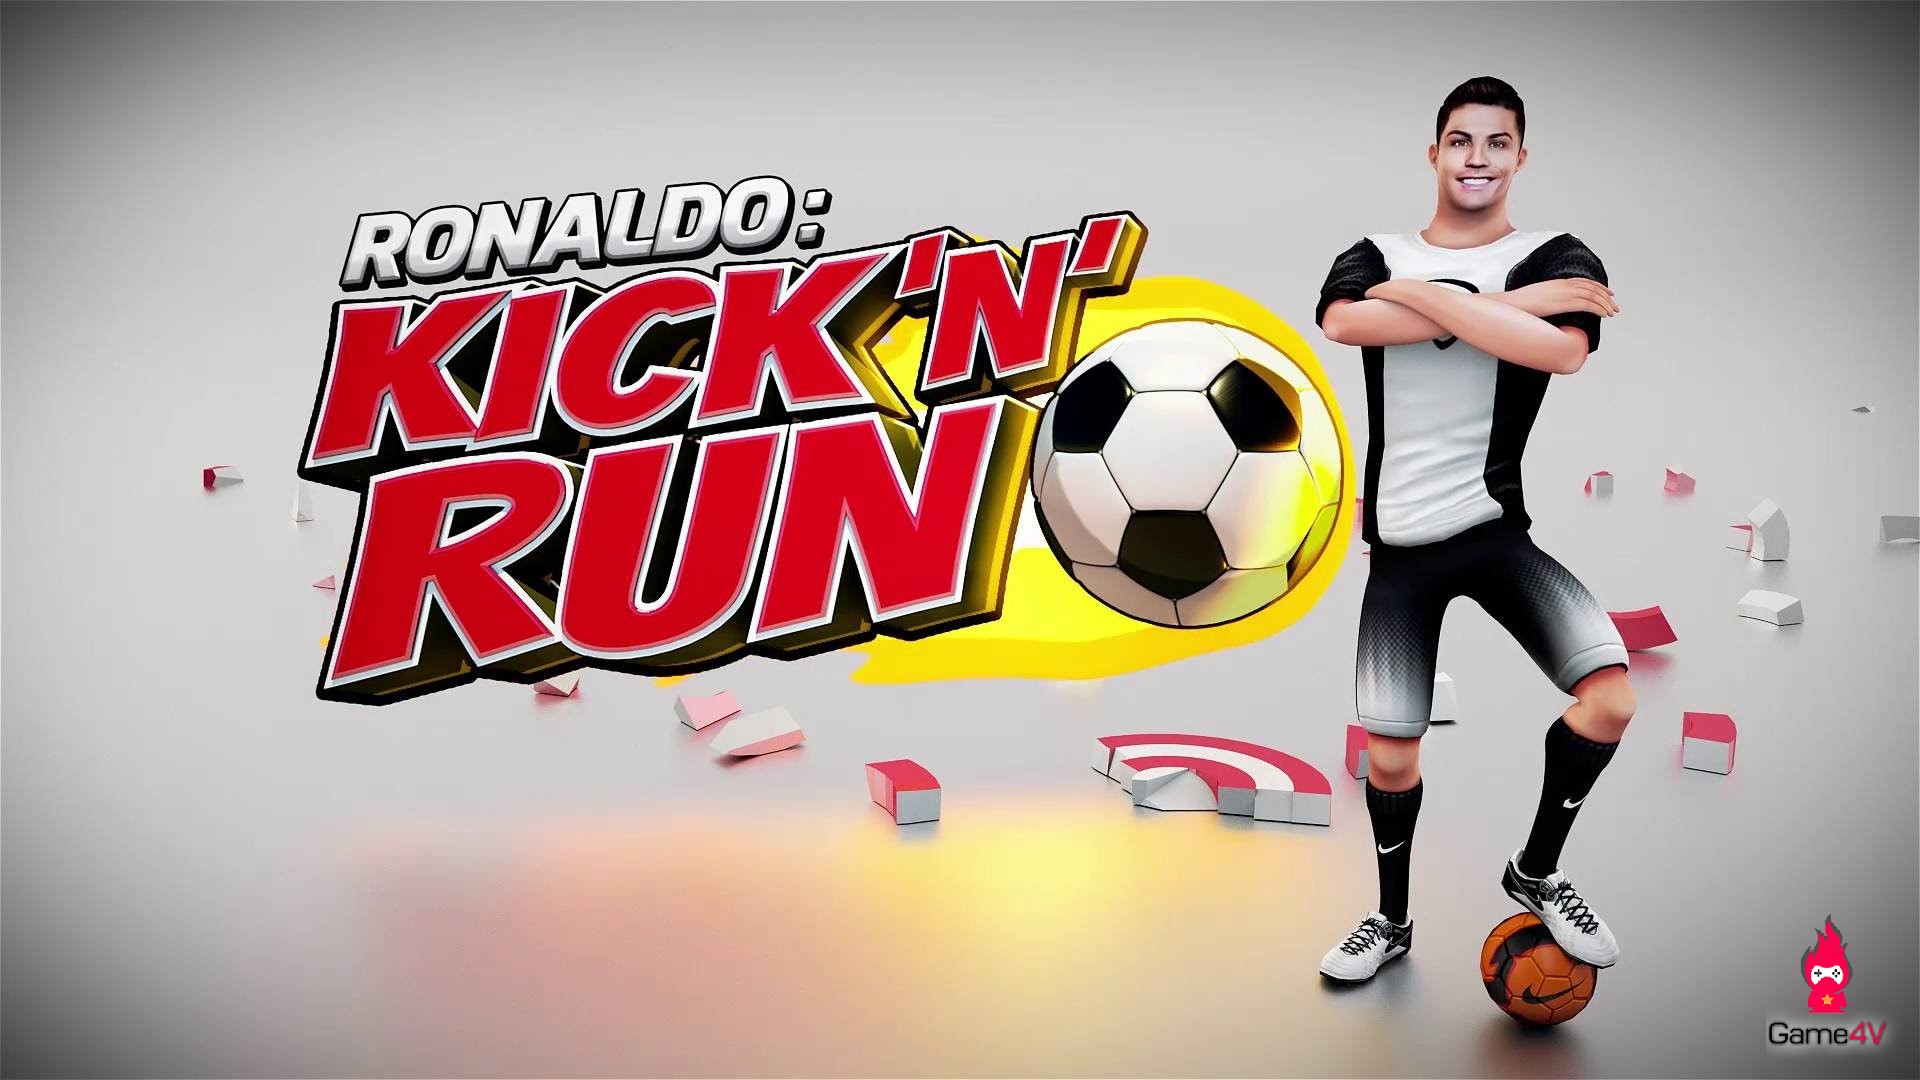 Christiano Ronaldo: Kick'n'Run - Trò chơi ăn theo CR7 đang trở thành một hiện tượng